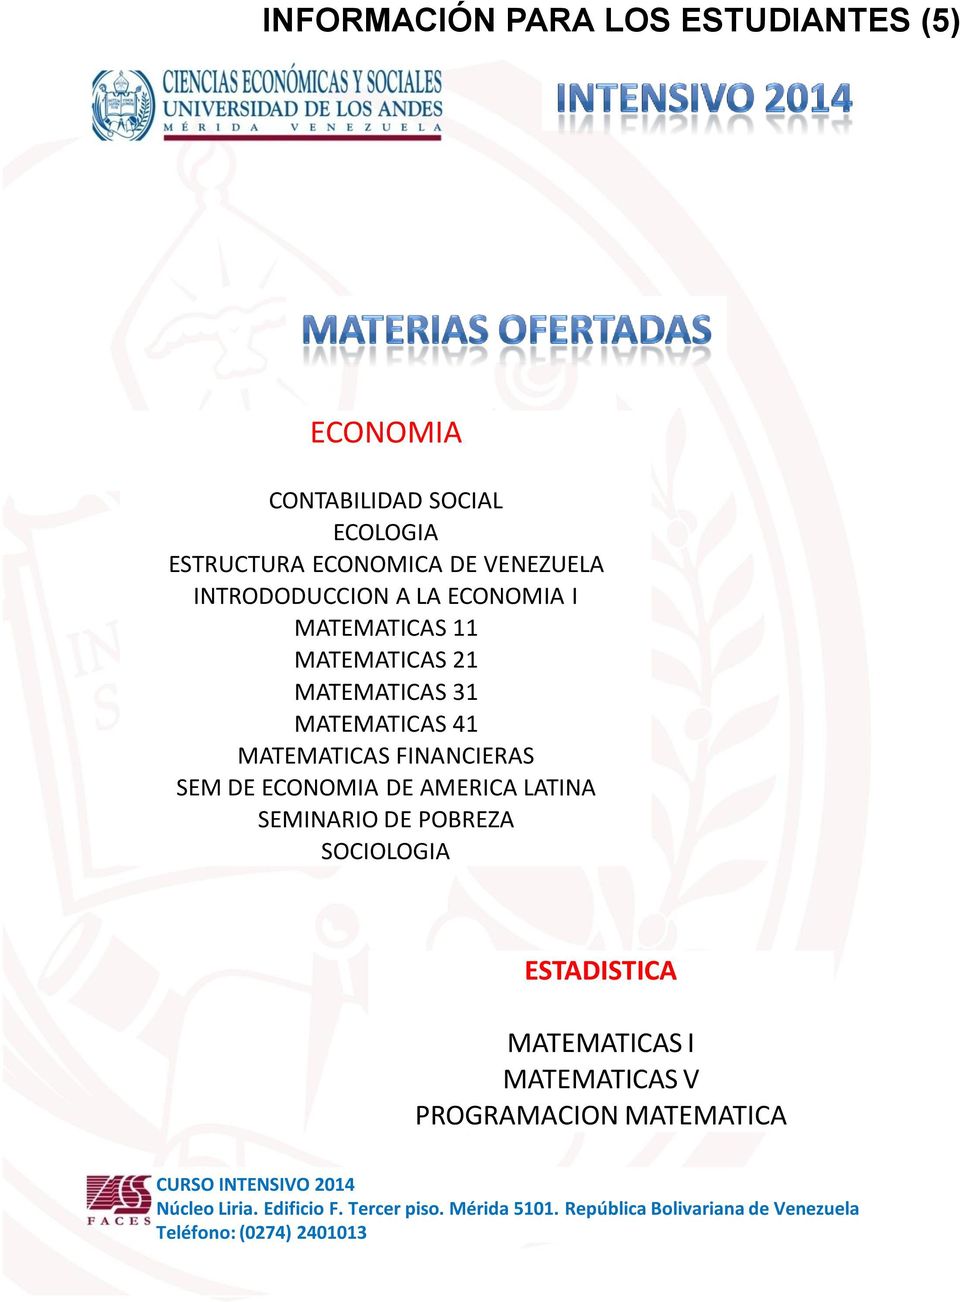 MATEMATICAS 31 MATEMATICAS 41 MATEMATICAS FINANCIERAS SEM DE ECONOMIA DE AMERICA LATINA